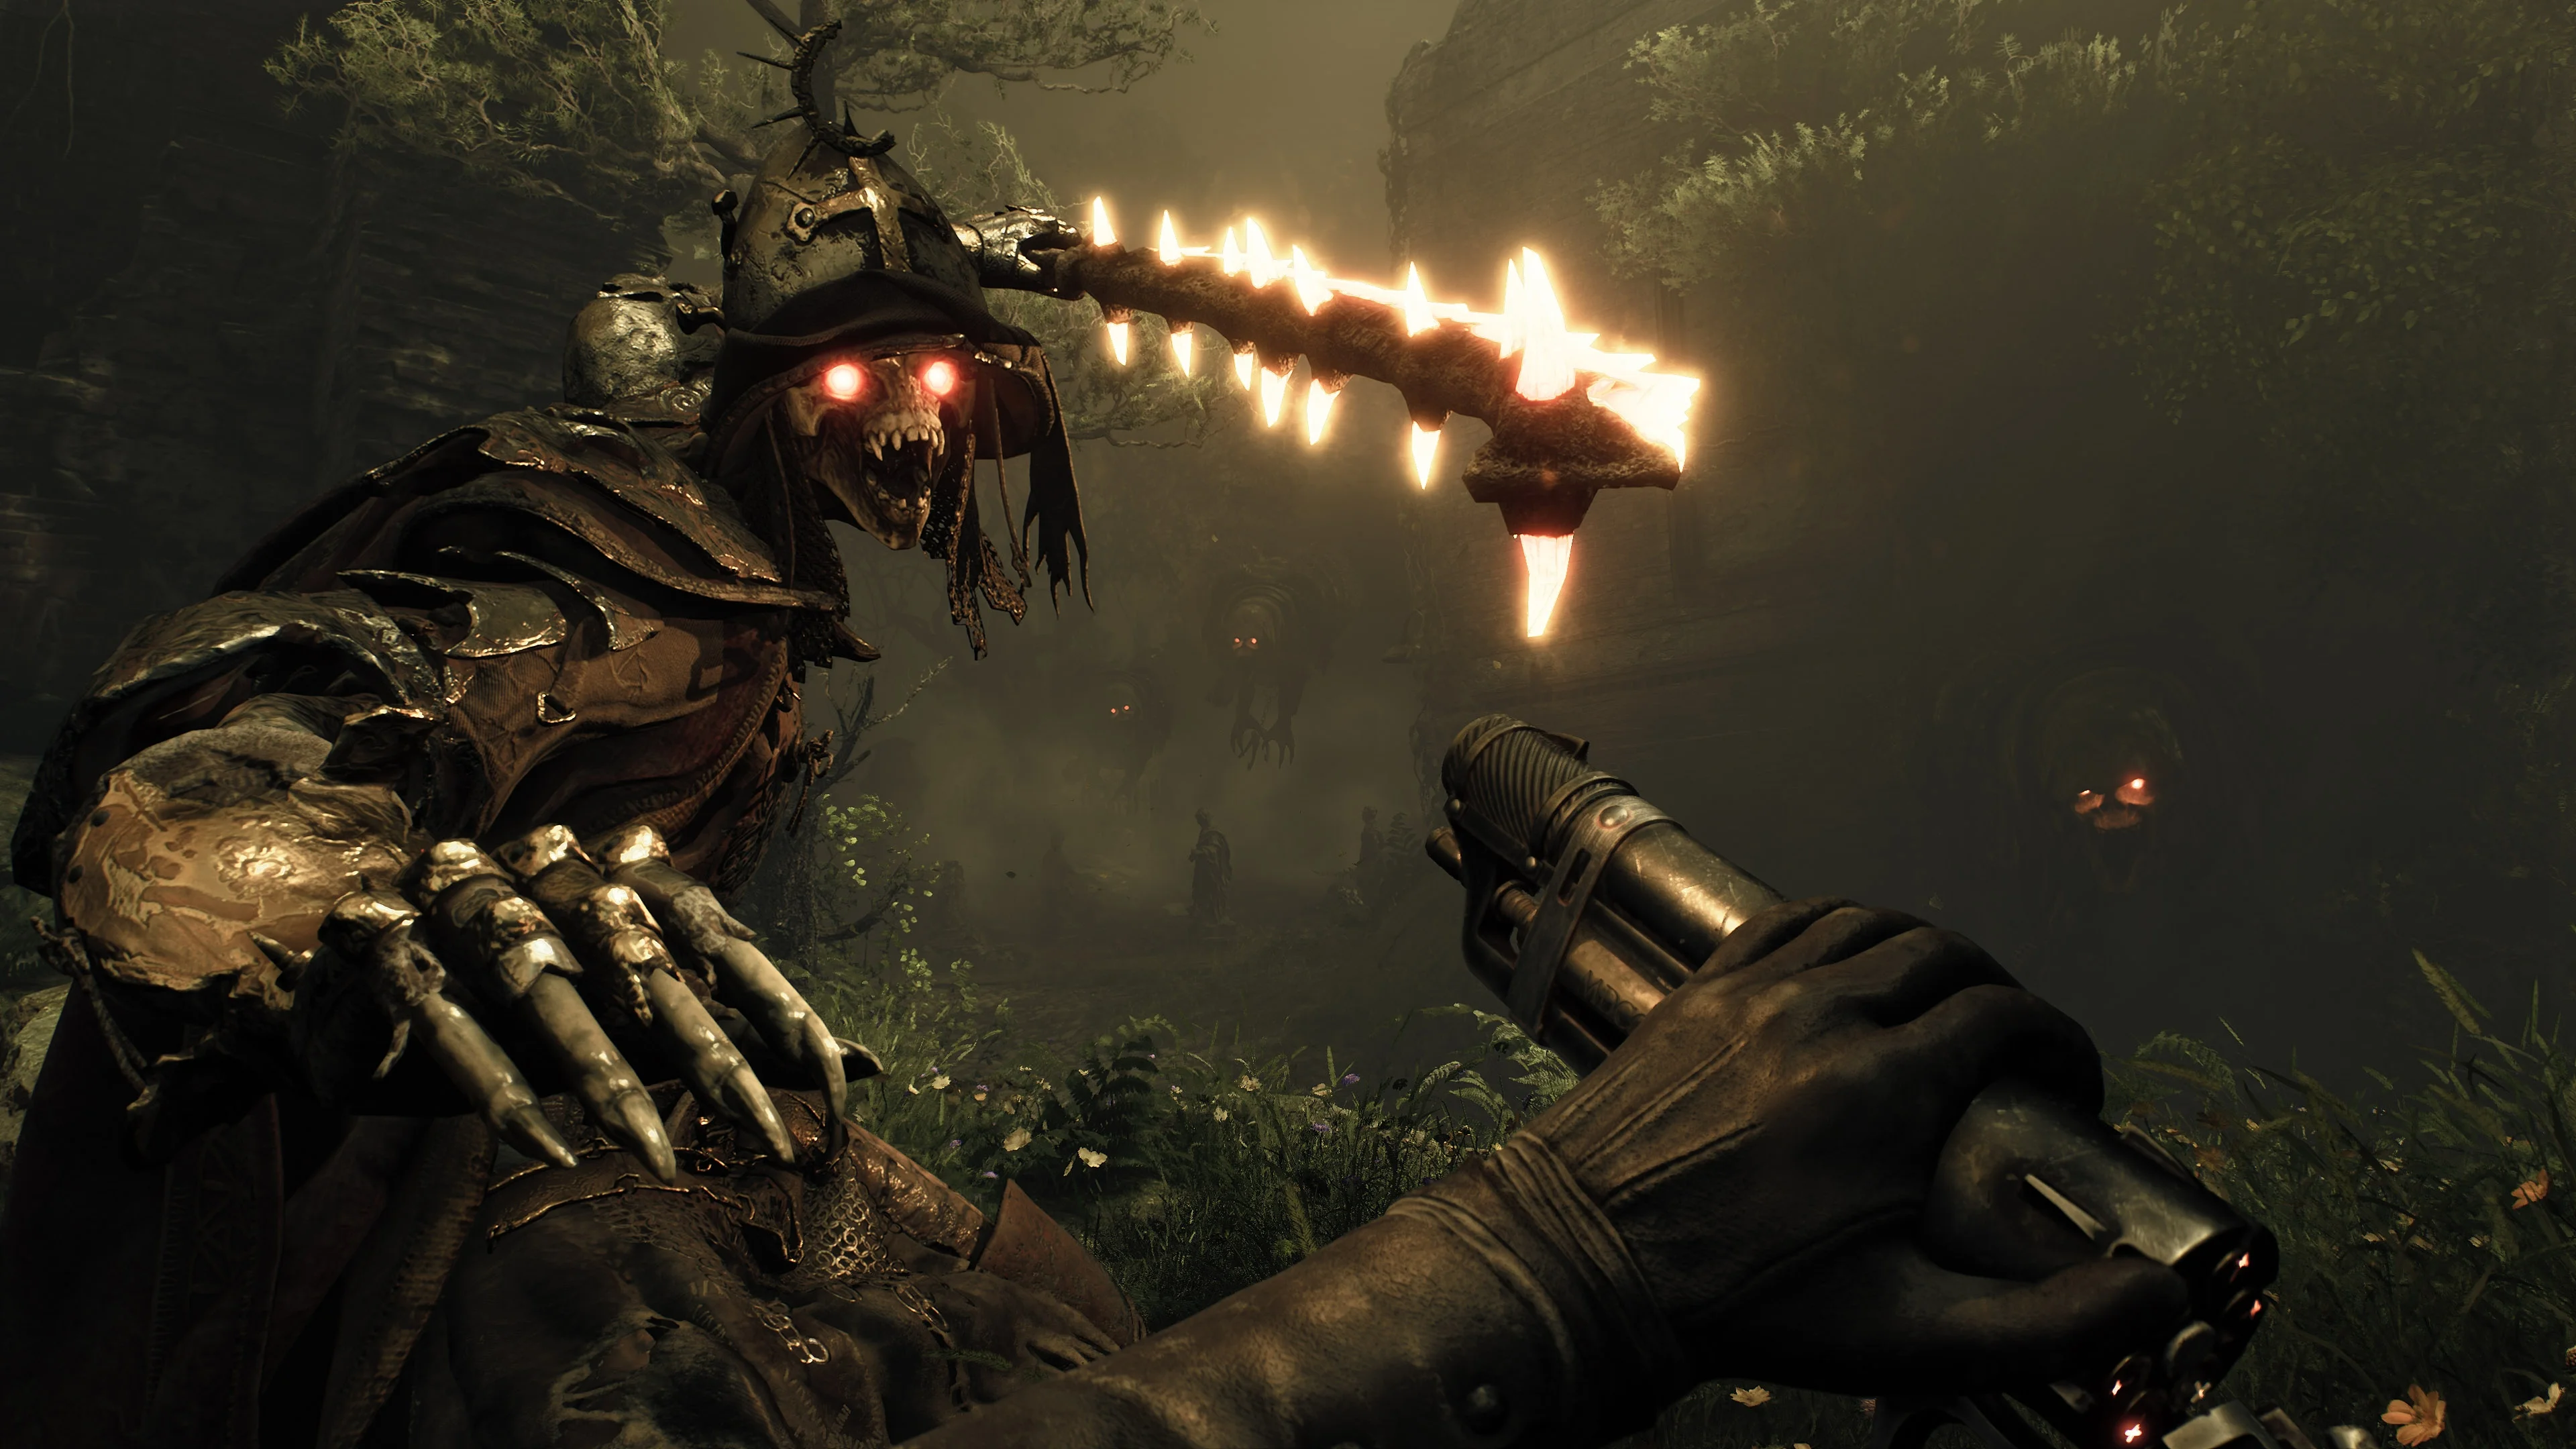 Игроки обвинили создателей шутера Witchfire в том, что они скопировали дизайн Лаппа из Dark Souls 3 - фото 1